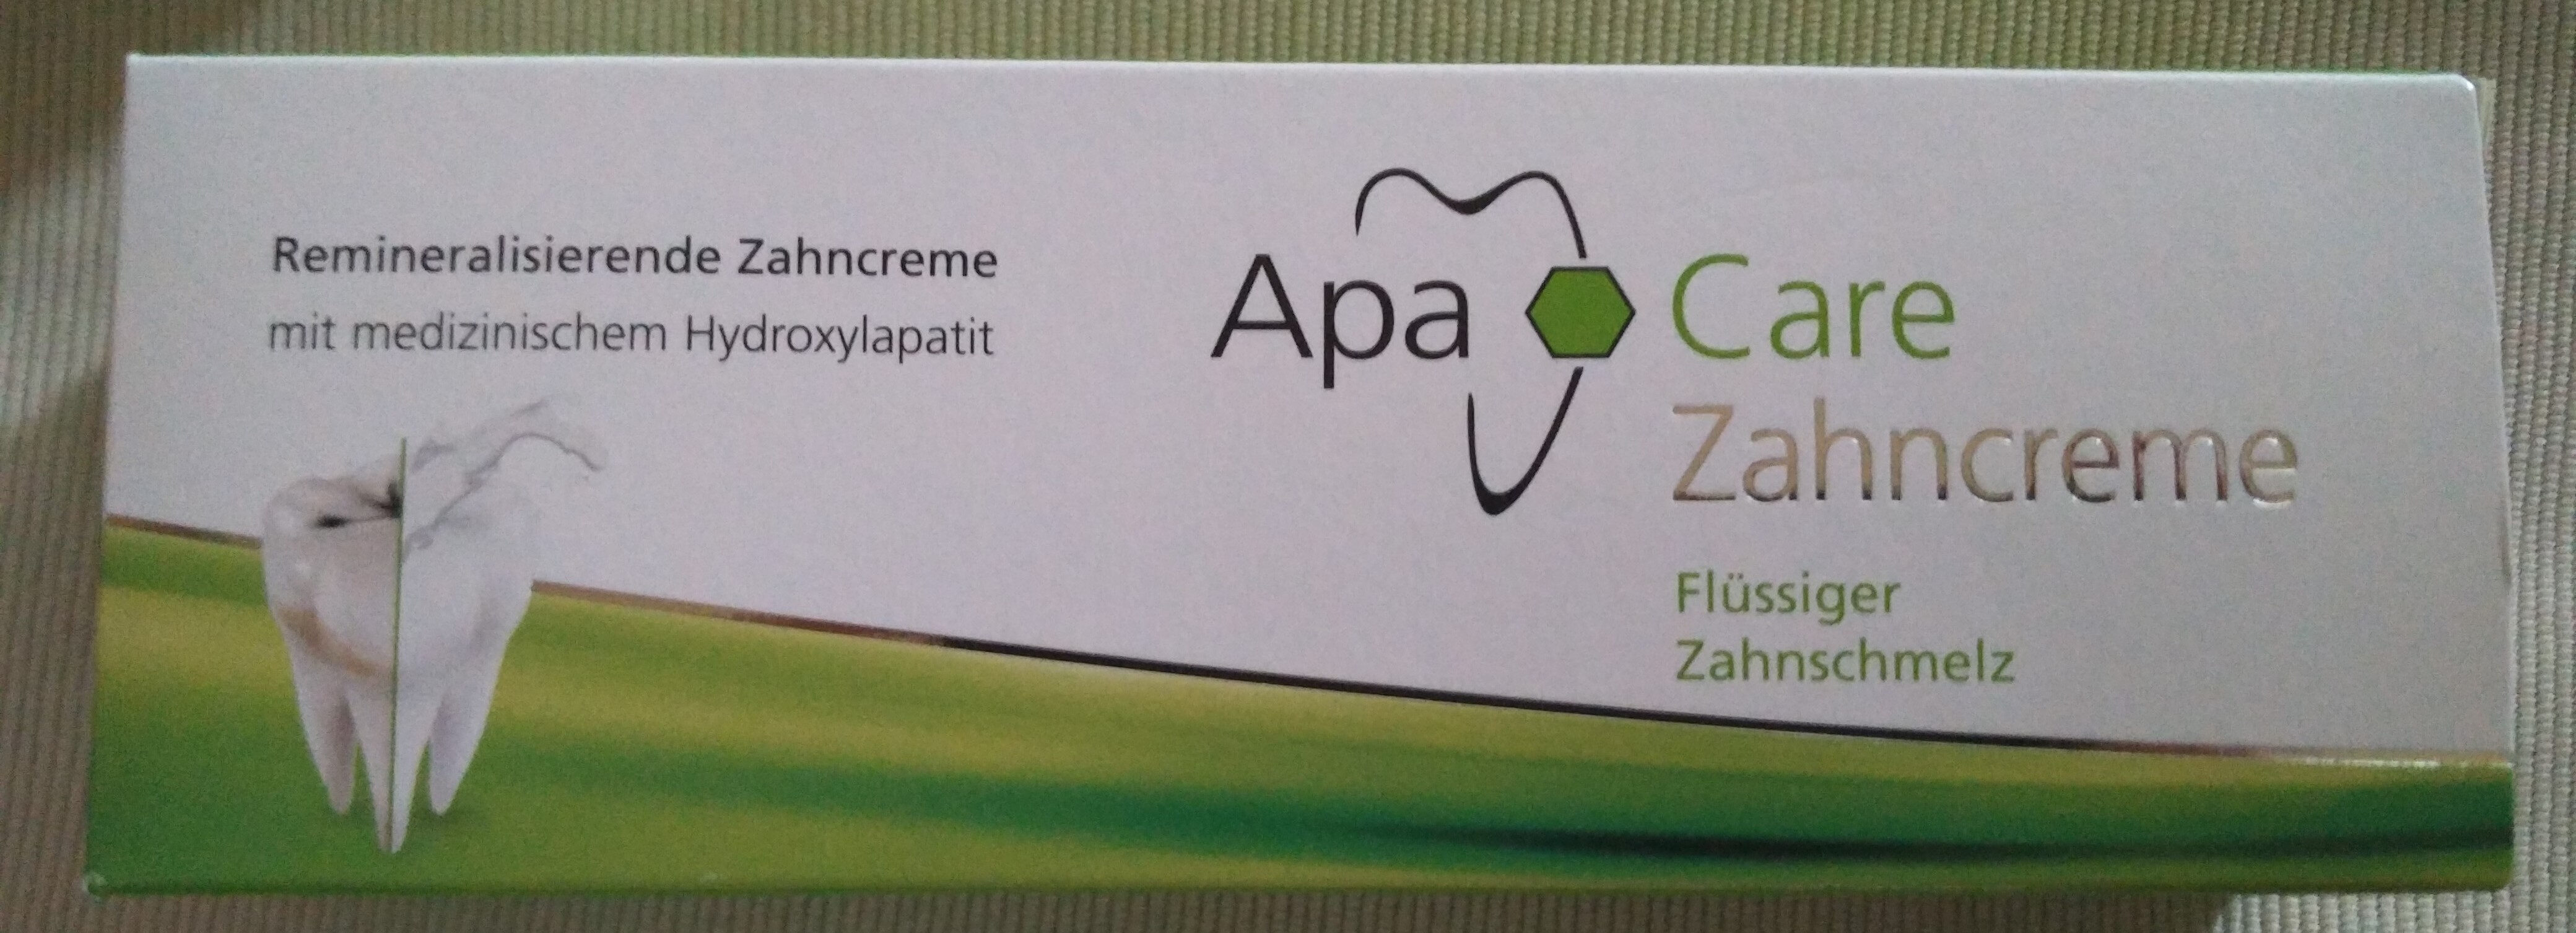 Care Zahncreme (Flüssiger Zahnschmelz) - Продукт - de